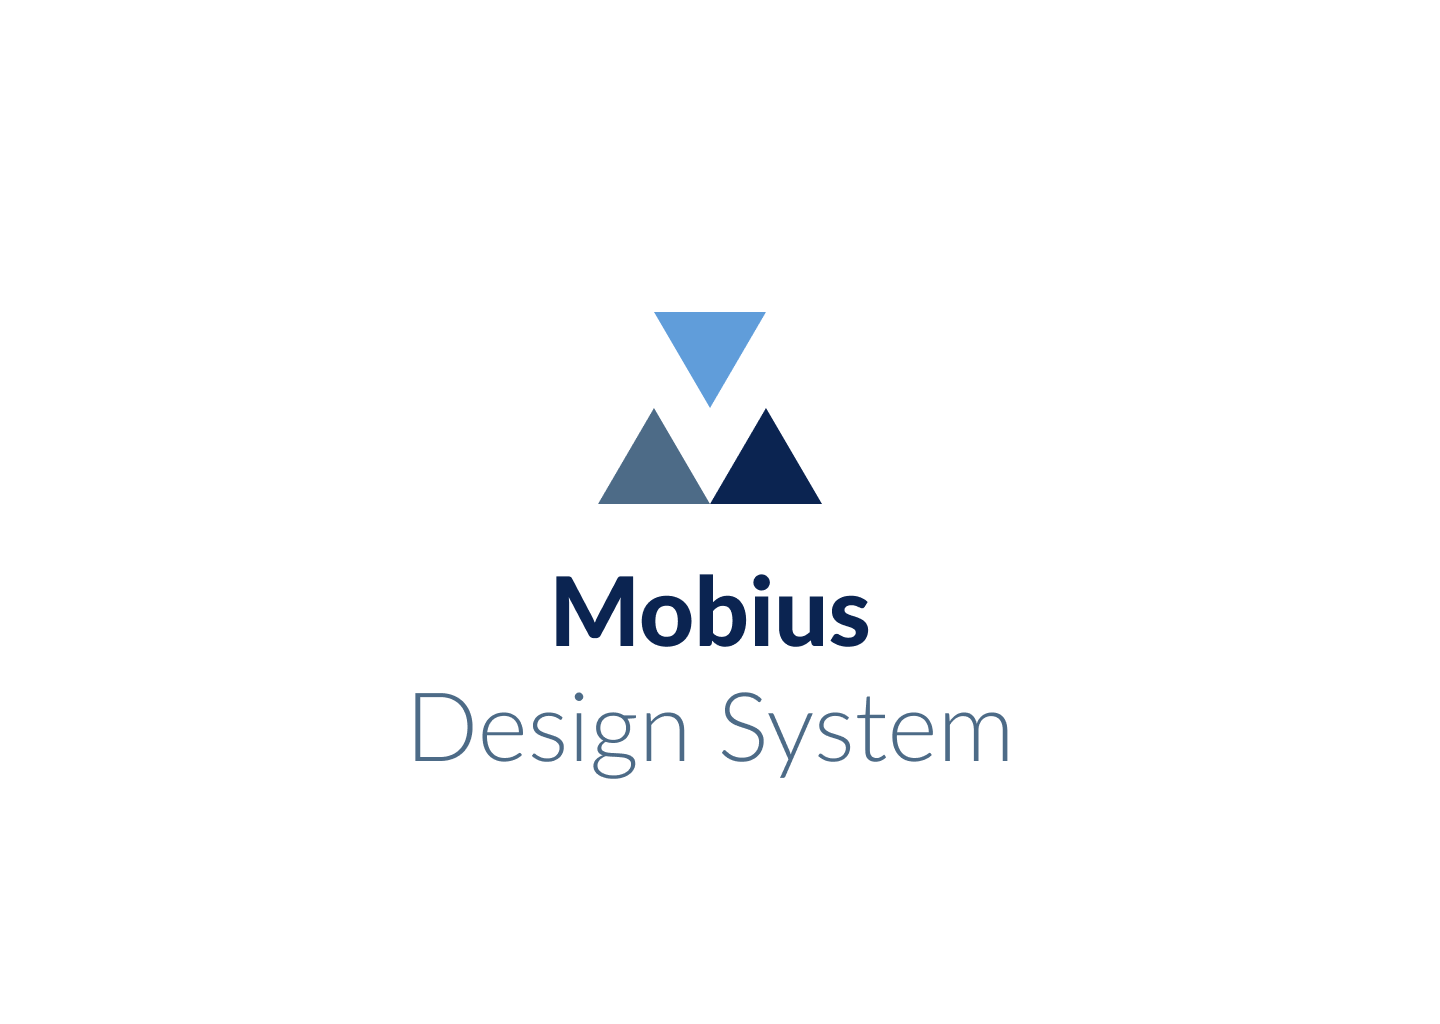 Mobius design system